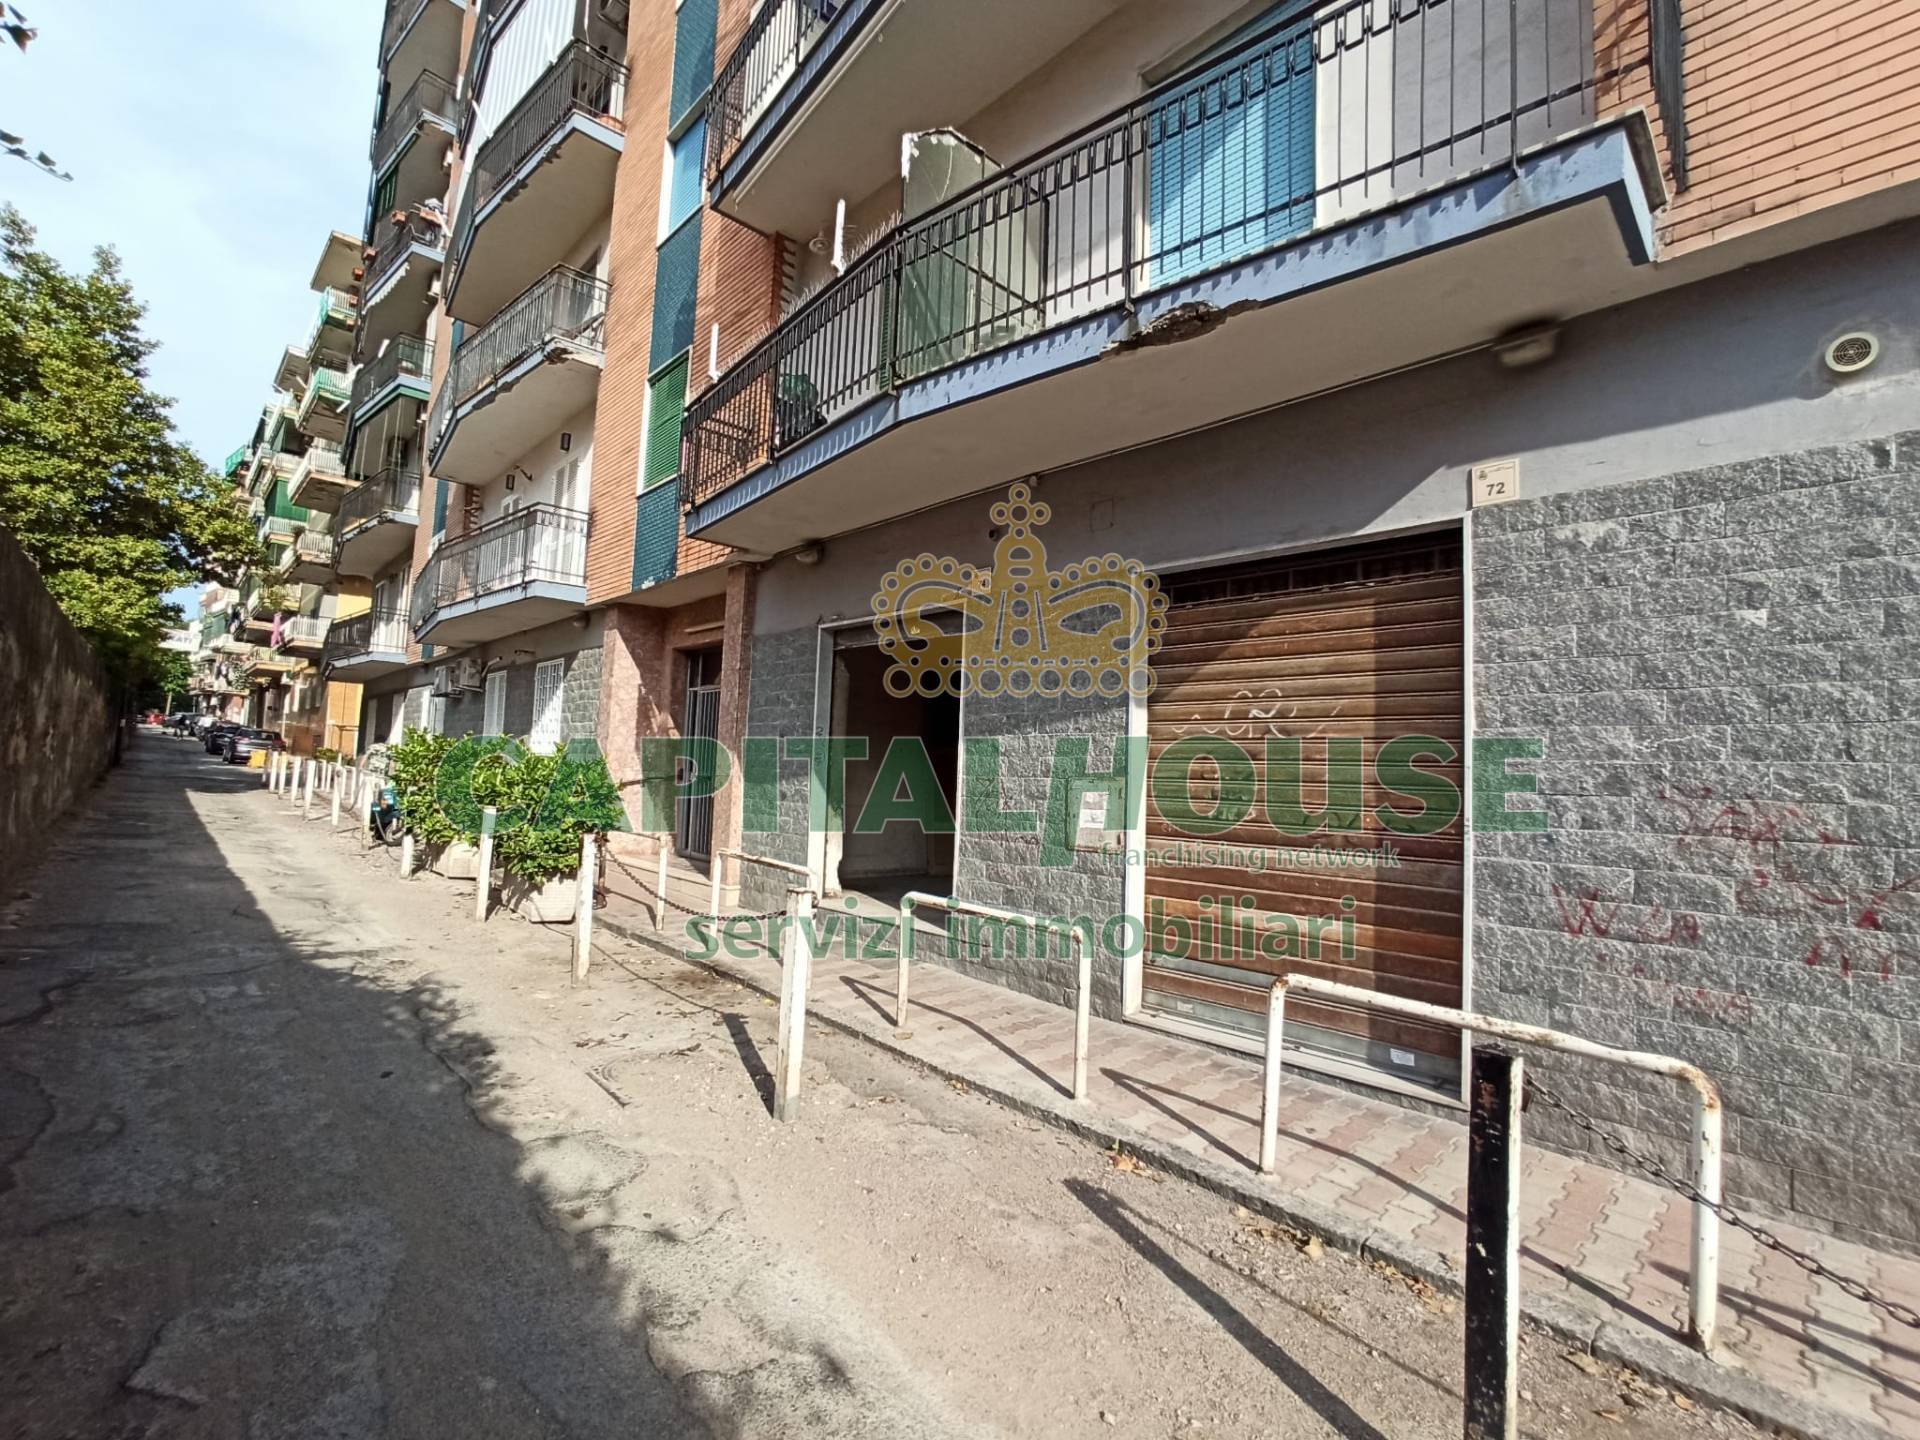 Locale commerciale in affitto a San Giorgio a Cremano